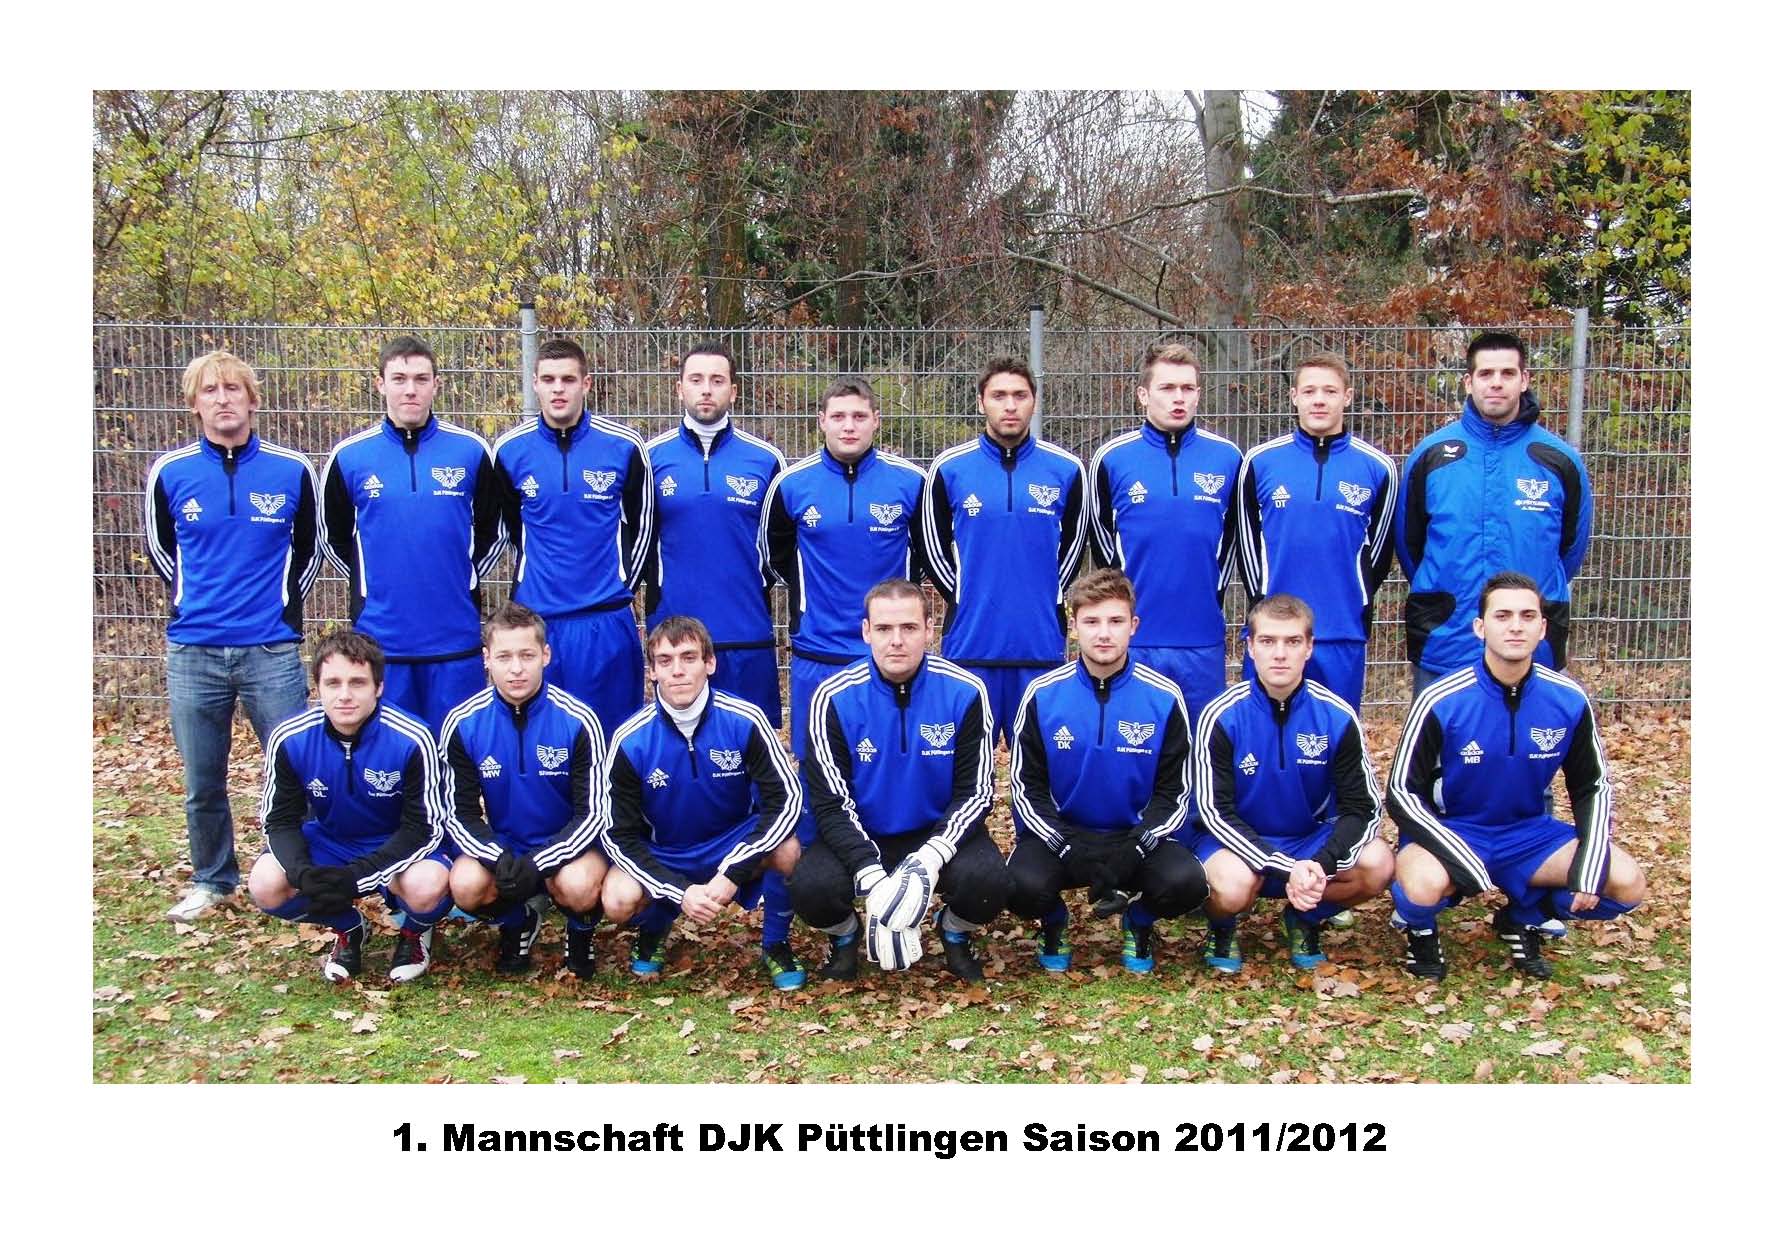 Mannschaftsfoto/Teamfoto von DJK Pttlingen